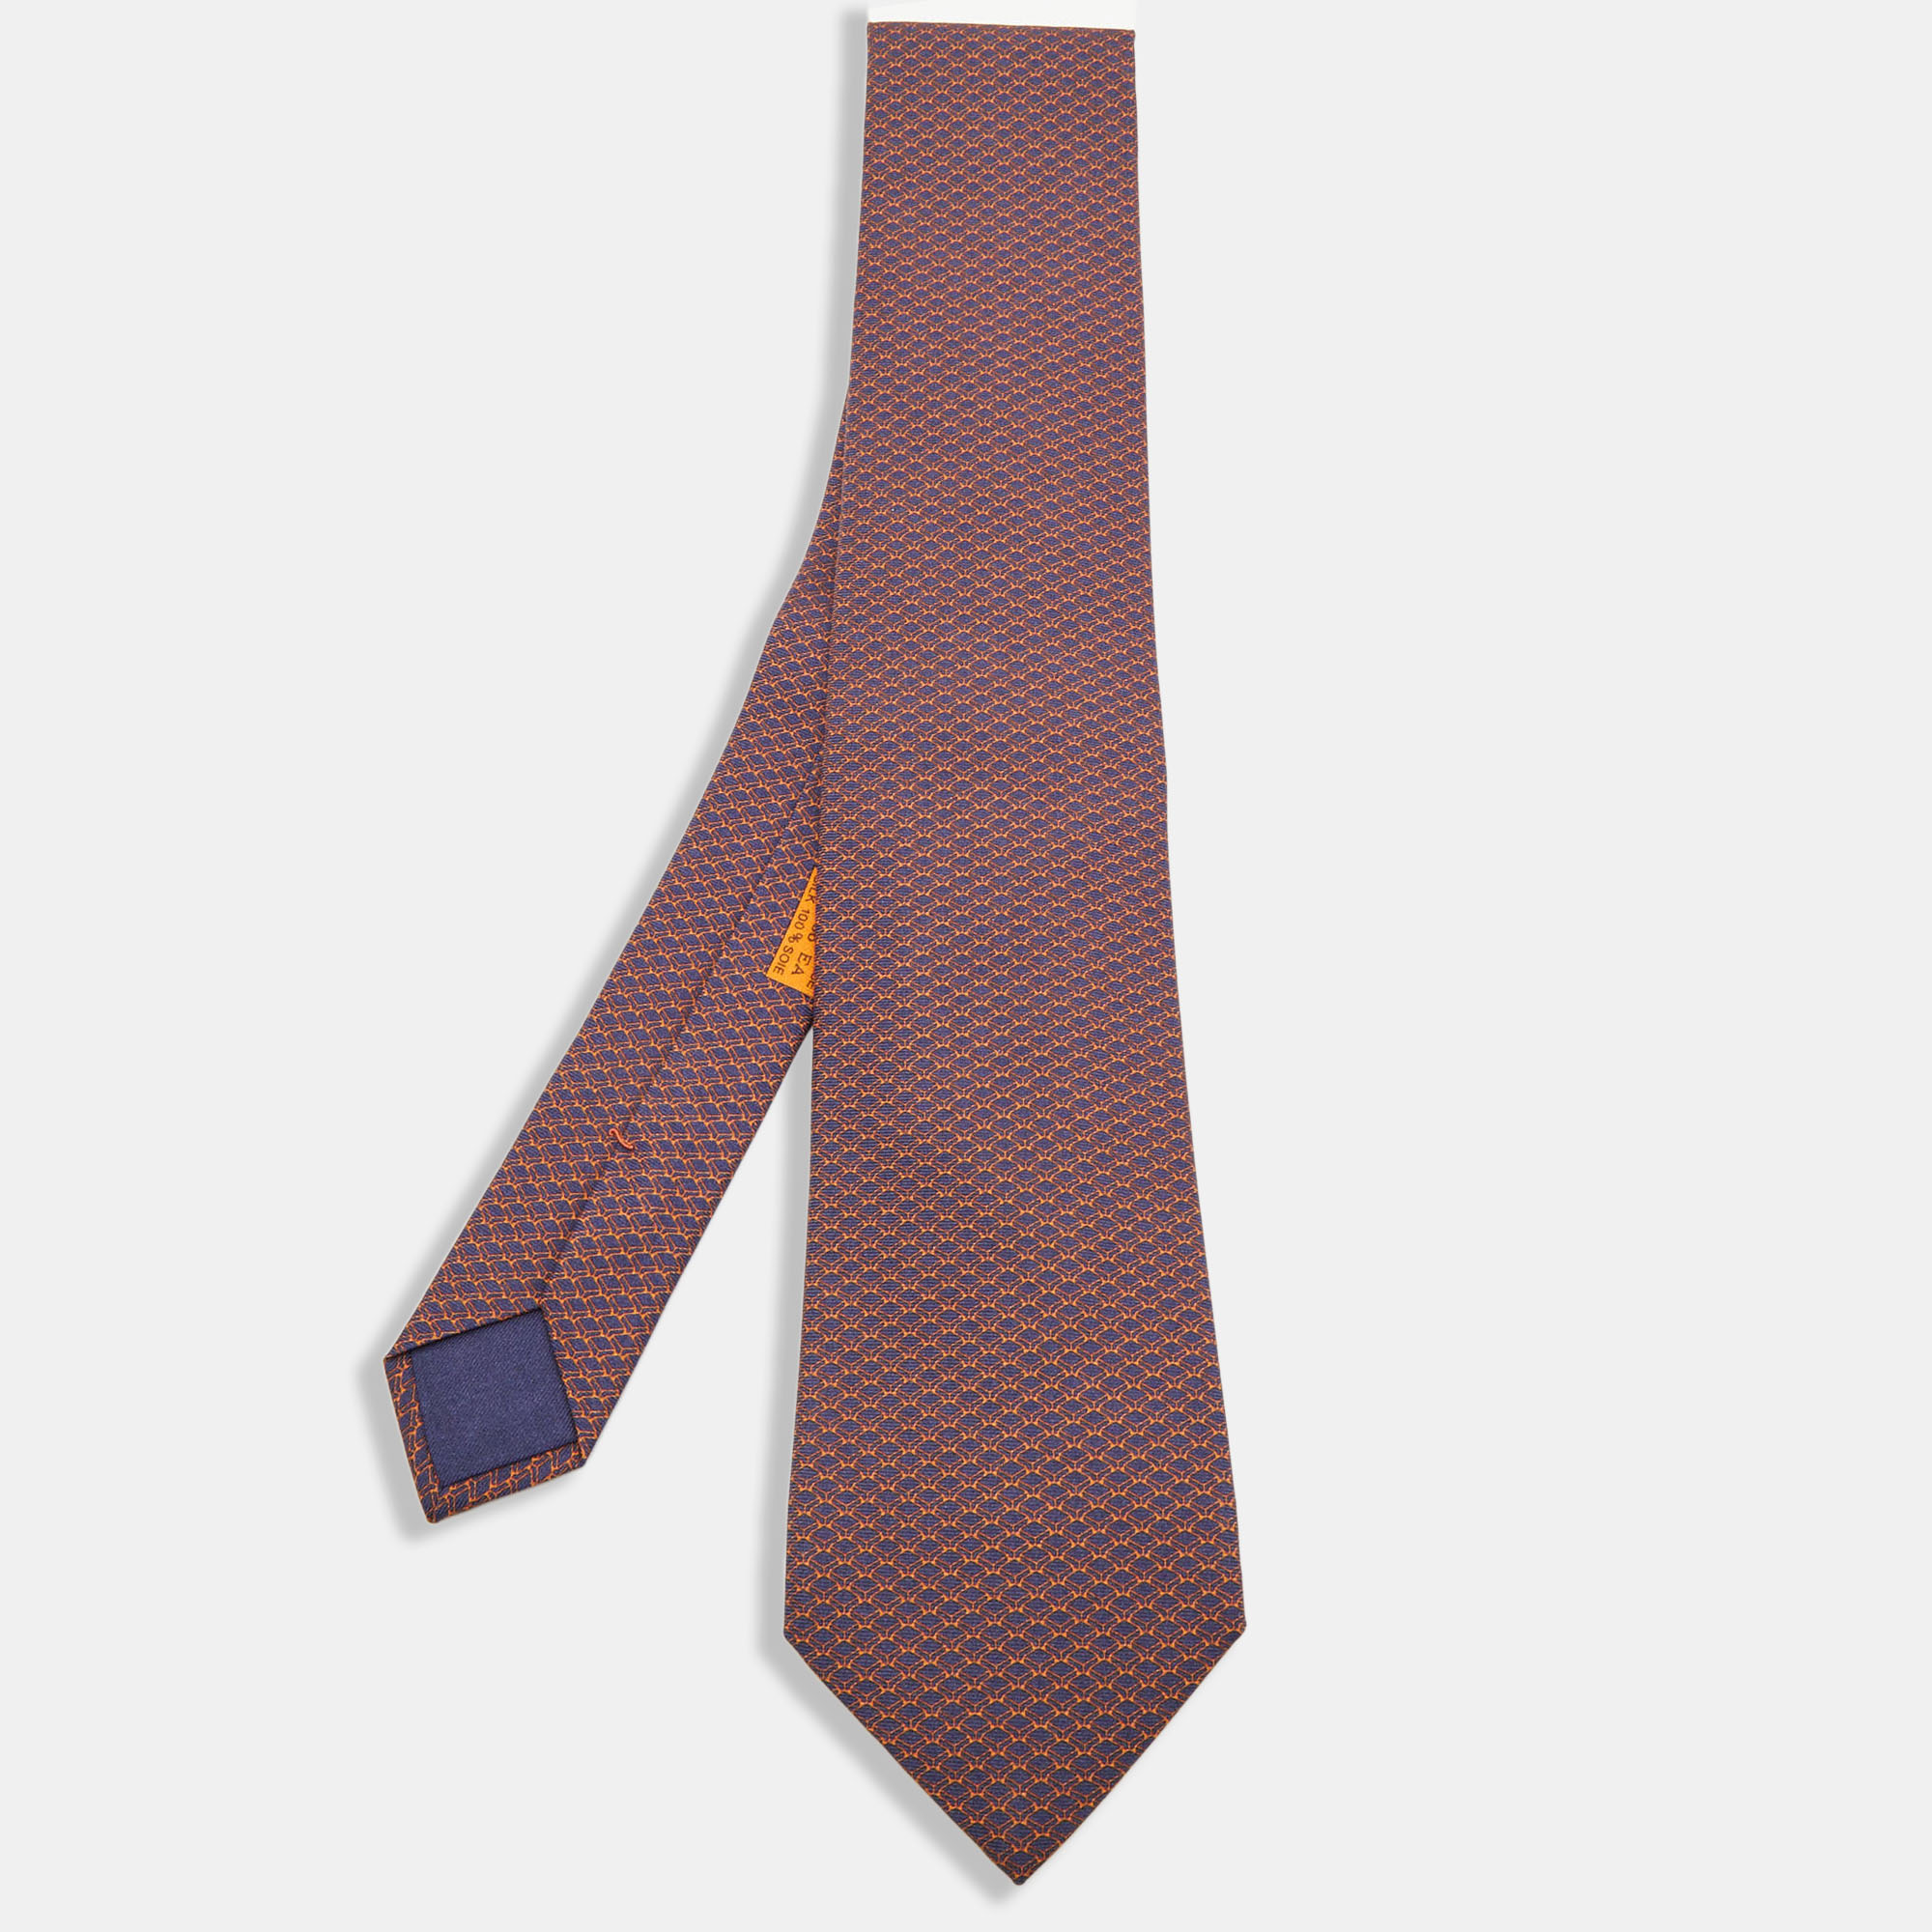 Hermes Blue/Orange Keyboard Print Silk Tie